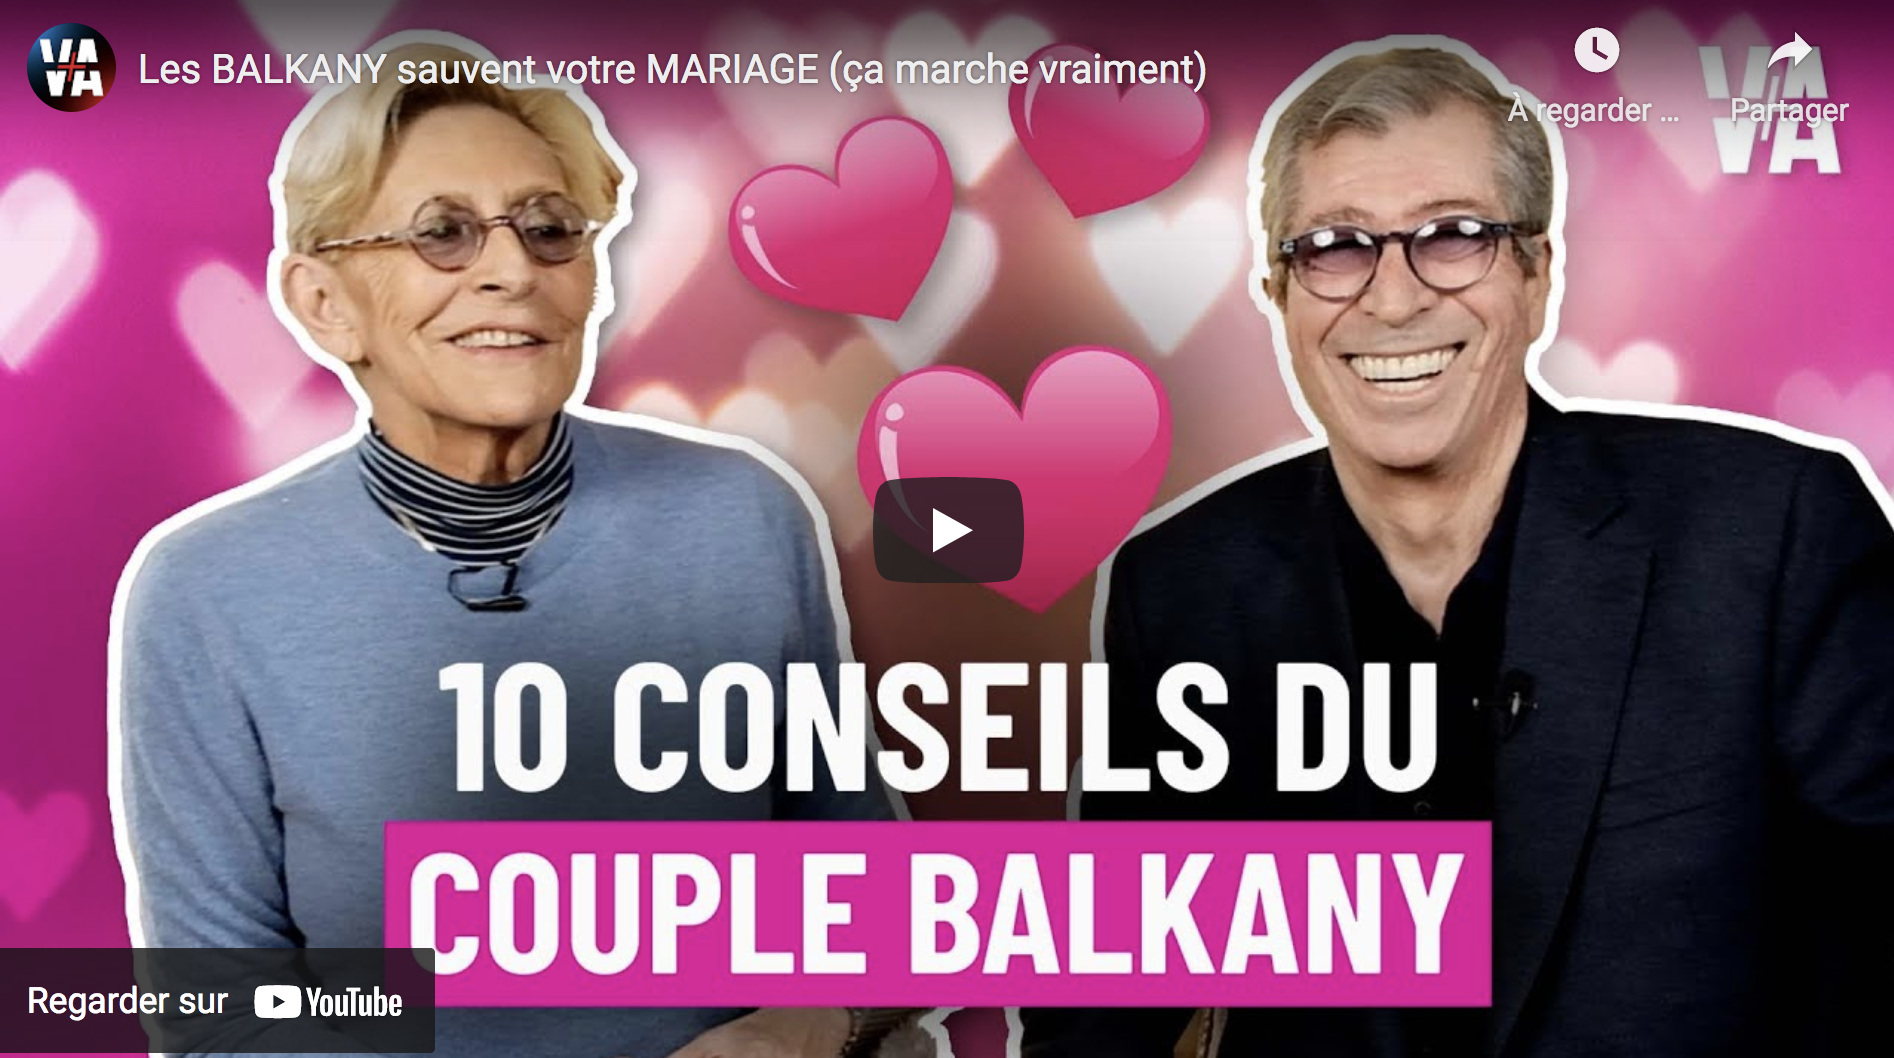 Les recettes des Balkany pour sauver votre mariage (ça marche vraiment)